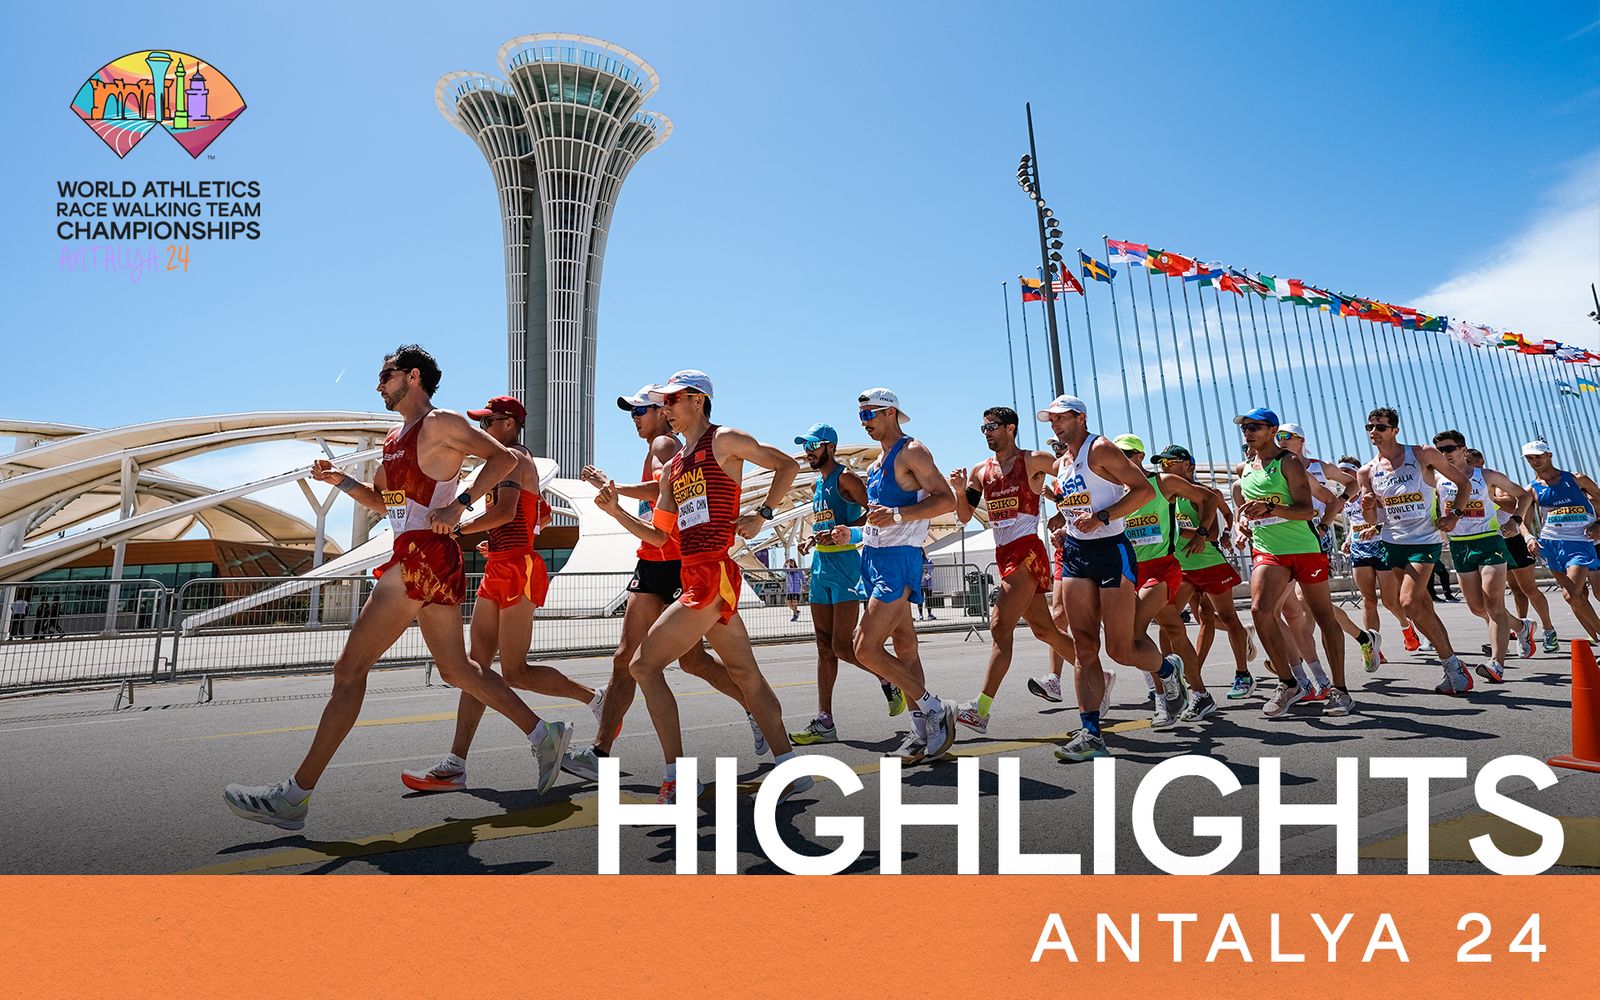 Antalya Highlights